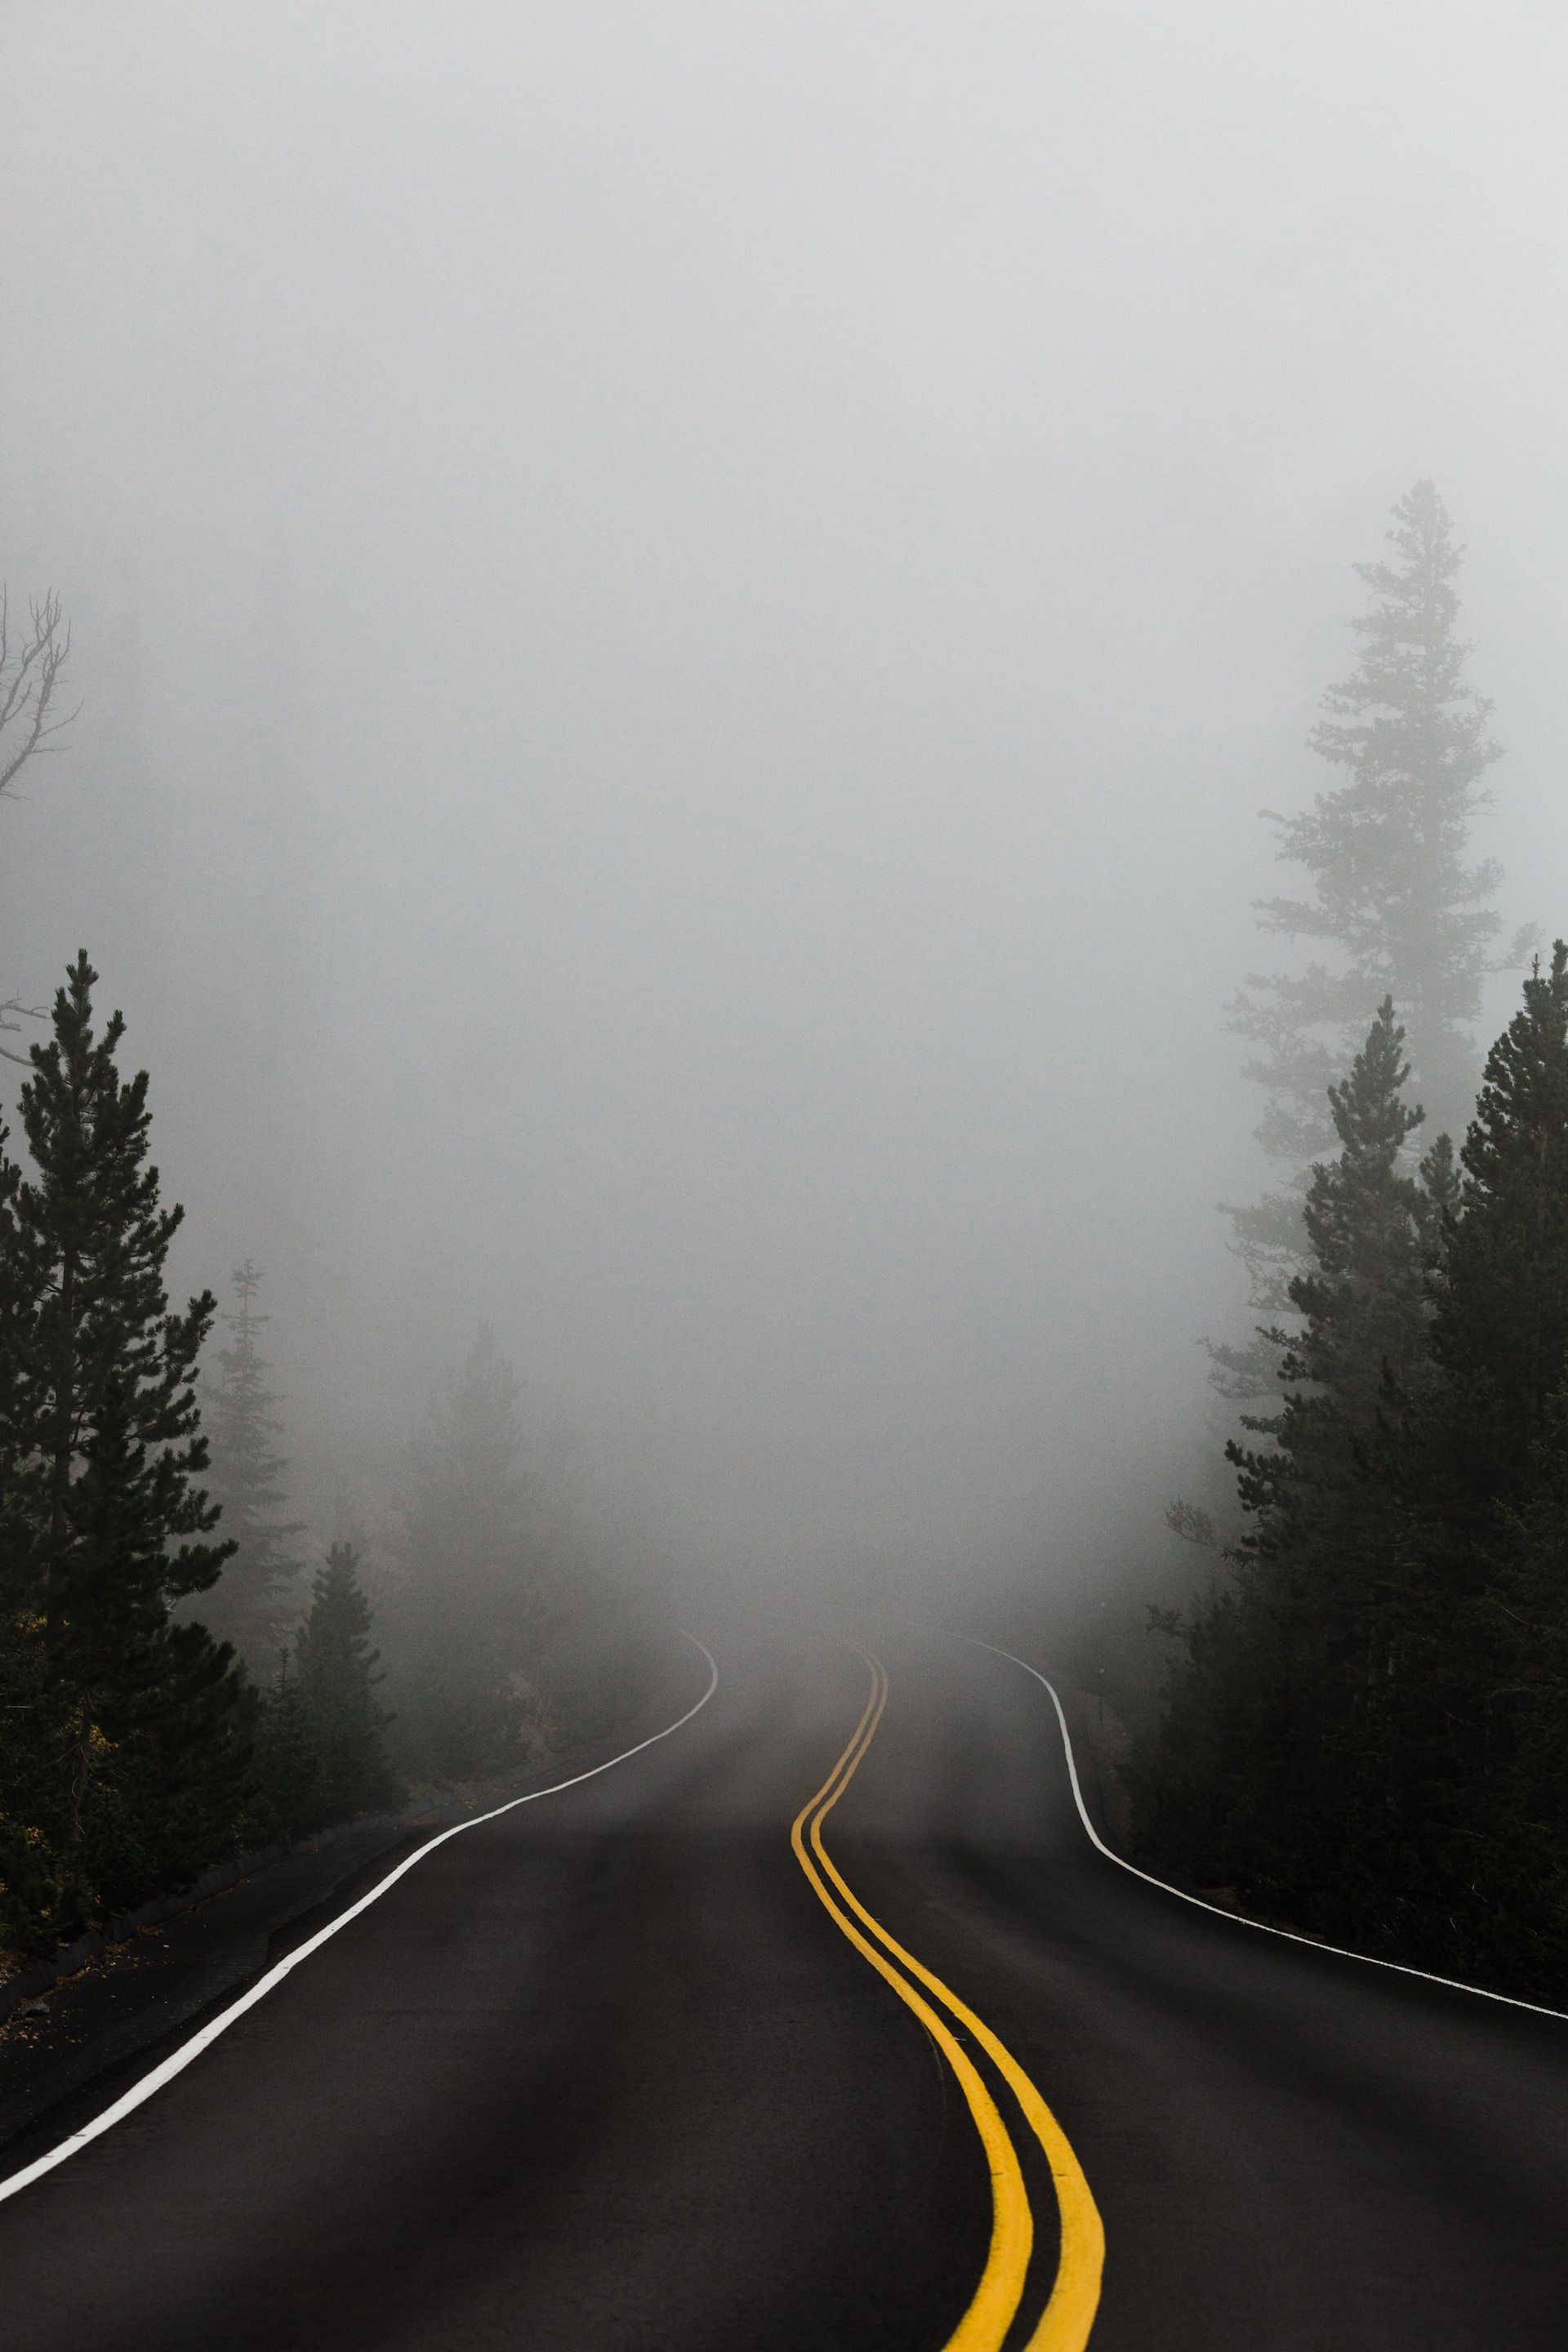 A scenic road